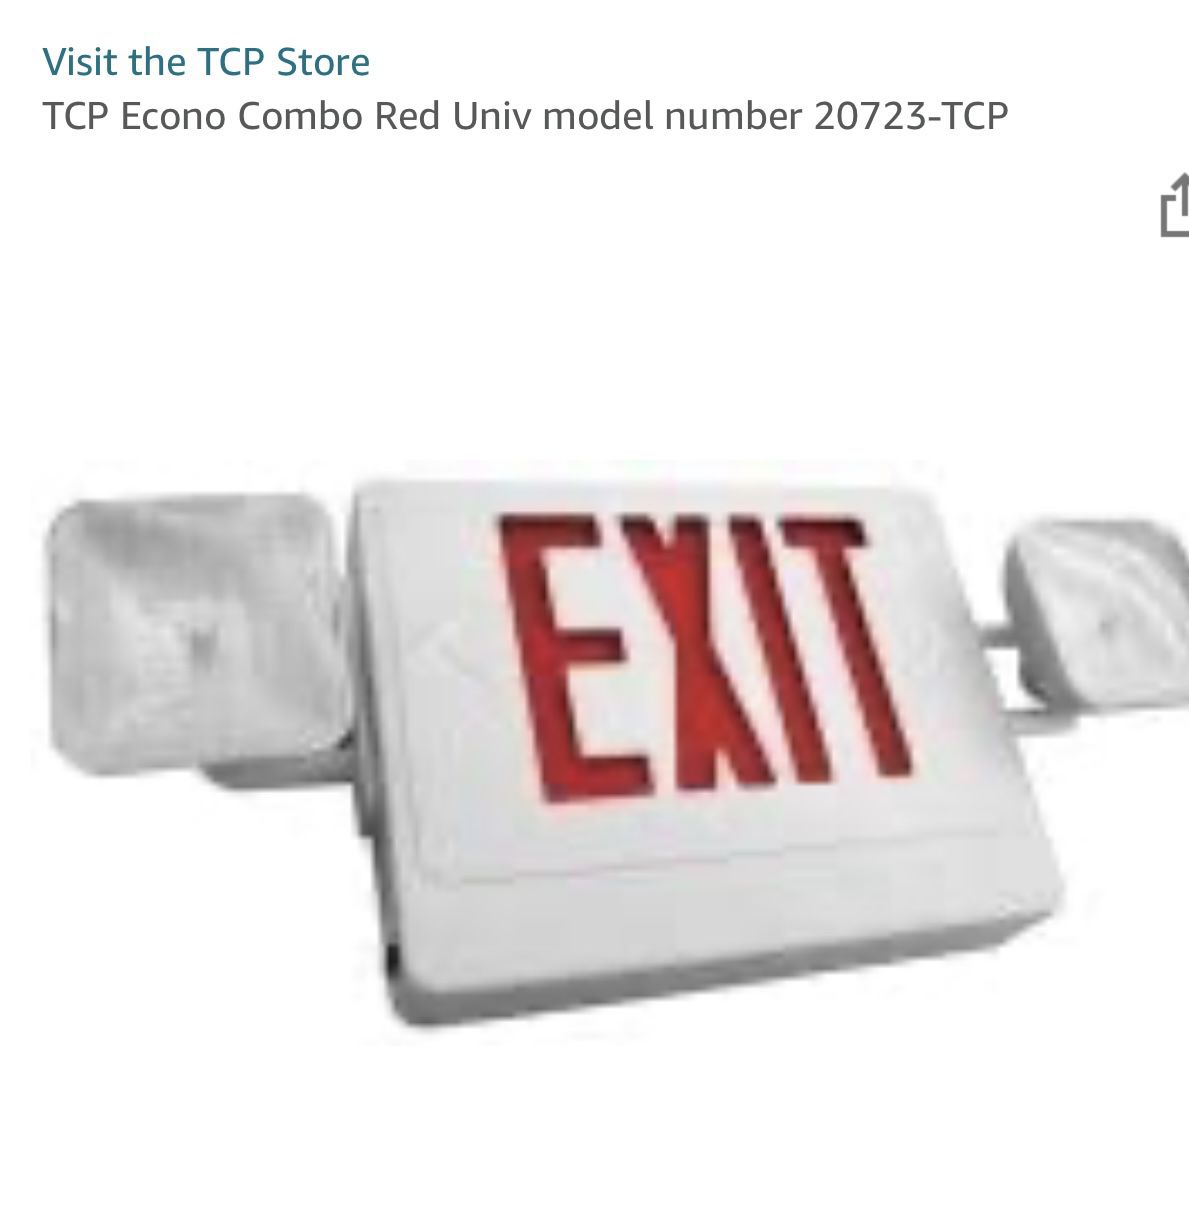 TCP Econo Combo Red